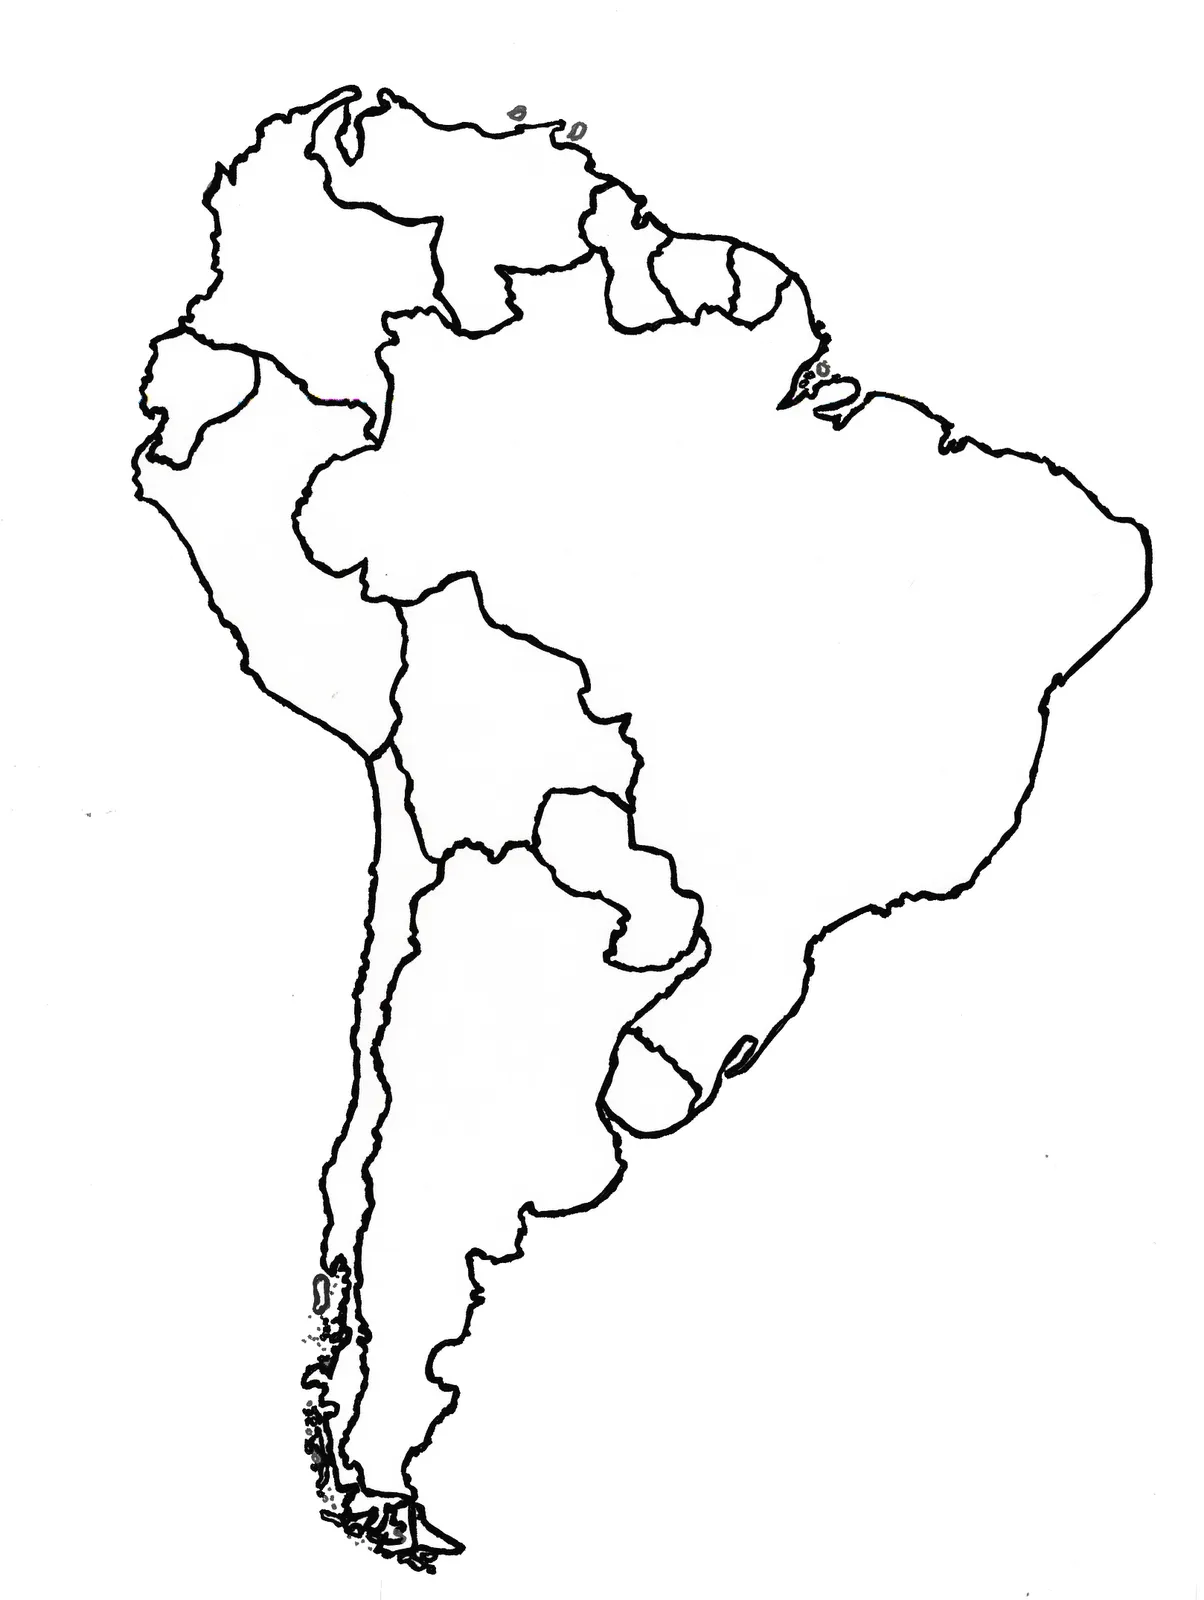 Mapa mudo america del sur - Imagui